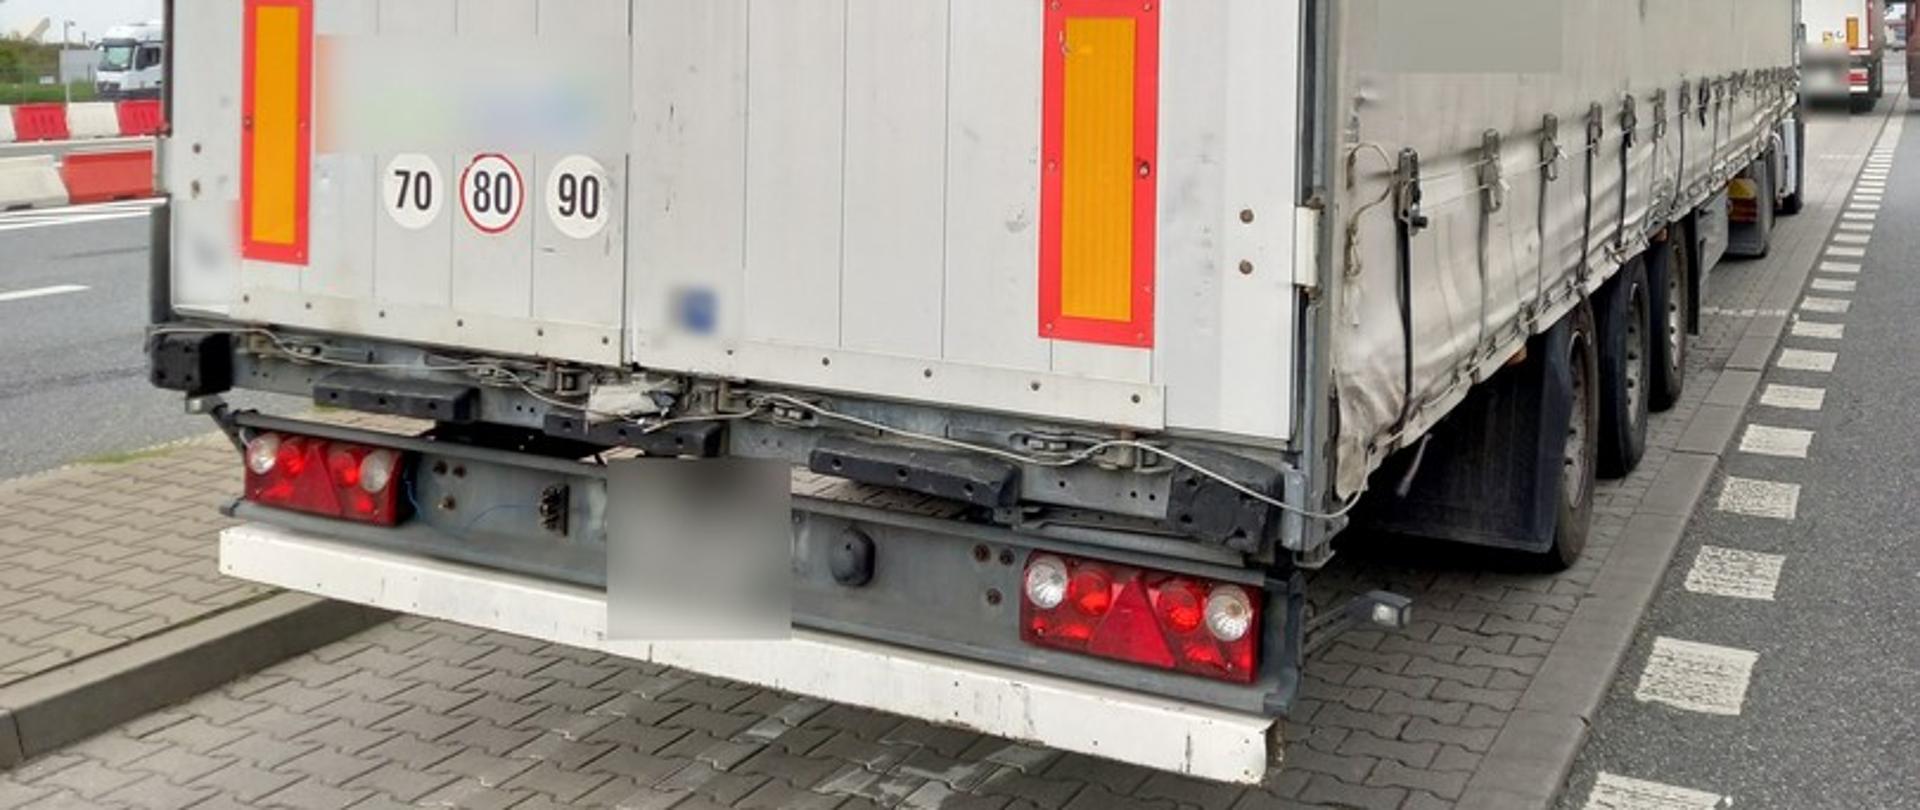 Inspektorzy z oddziału w Koninie zatrzymali do kontroli zespół pojazdów, którym przewoźnik z Tadżykistanu wykonywał międzynarodowy przewóz drogowy drewnianych mebli z Białorusi do Polski